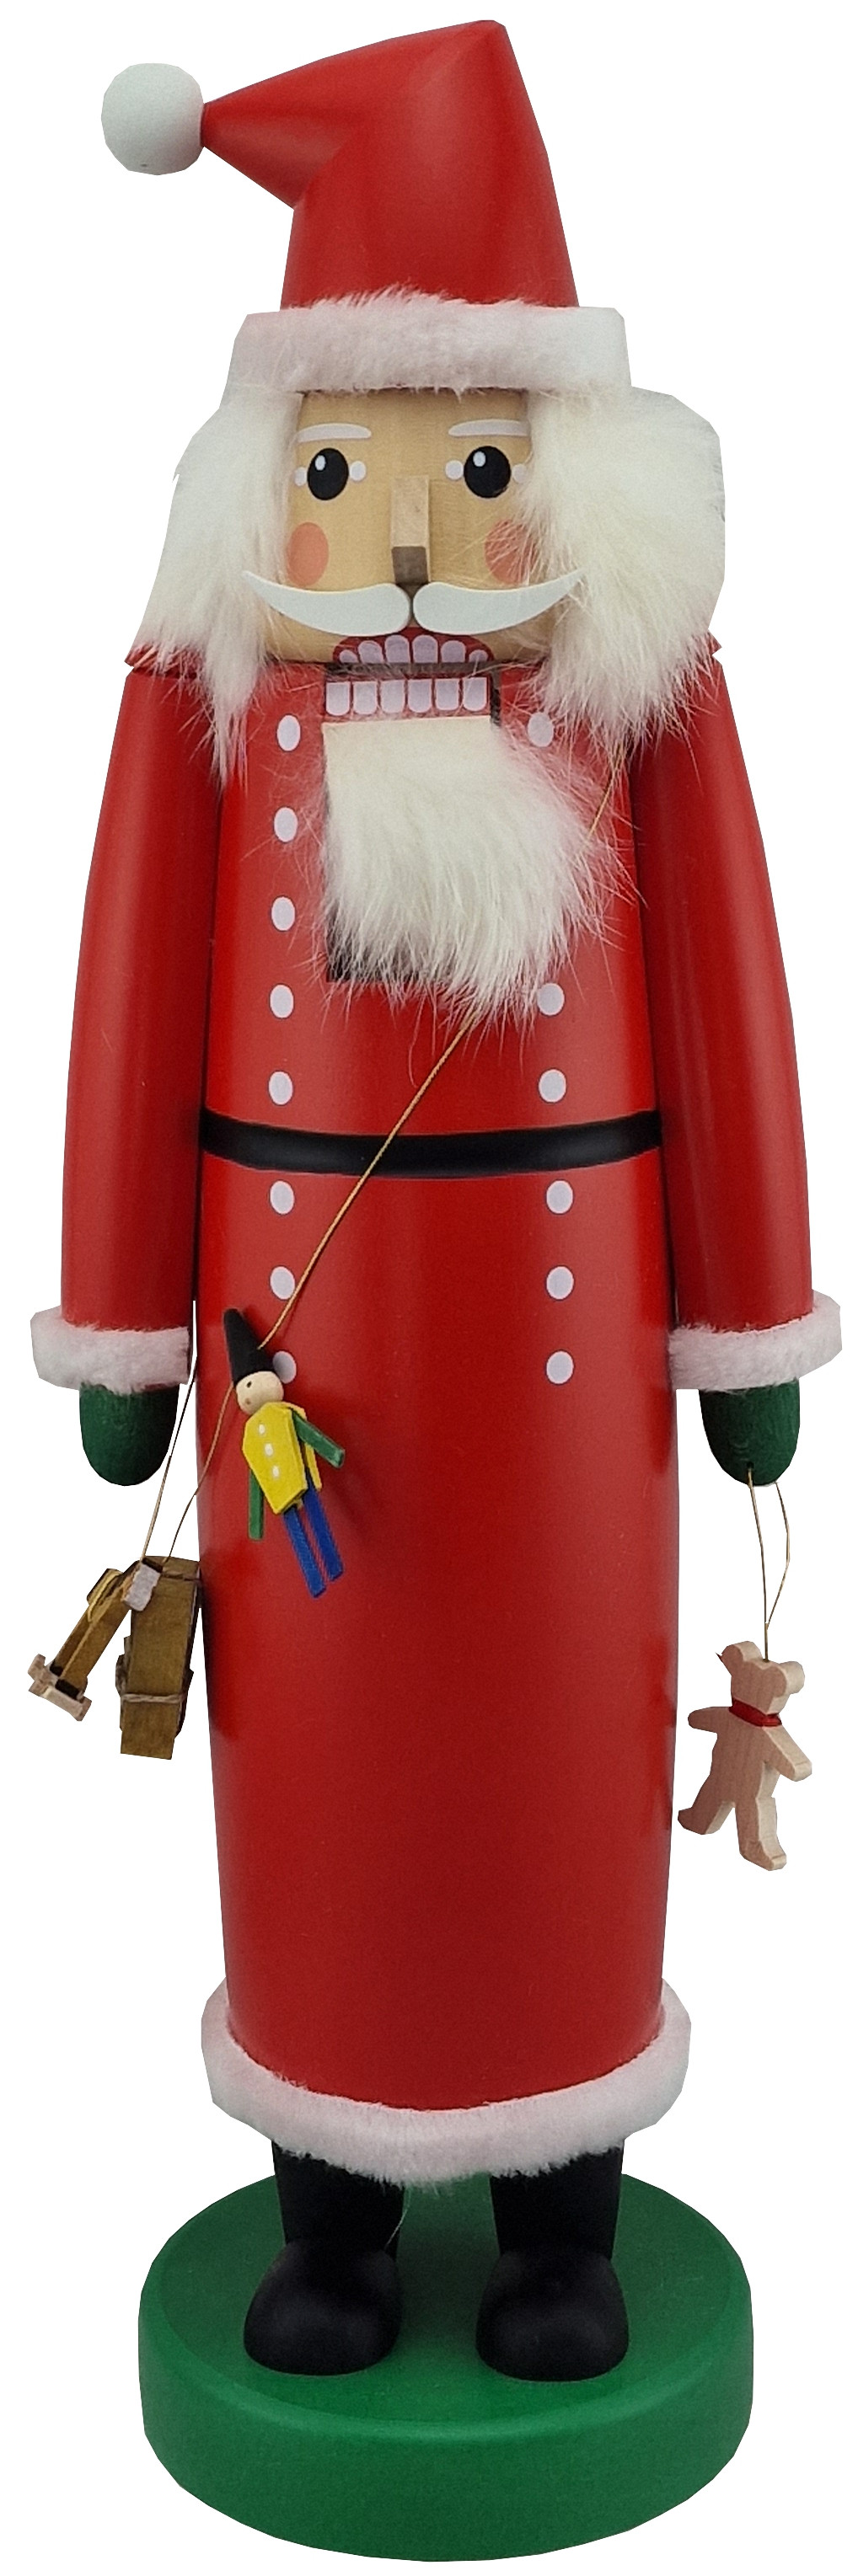 Nussknacker Weihnachtsmann, 45 cm